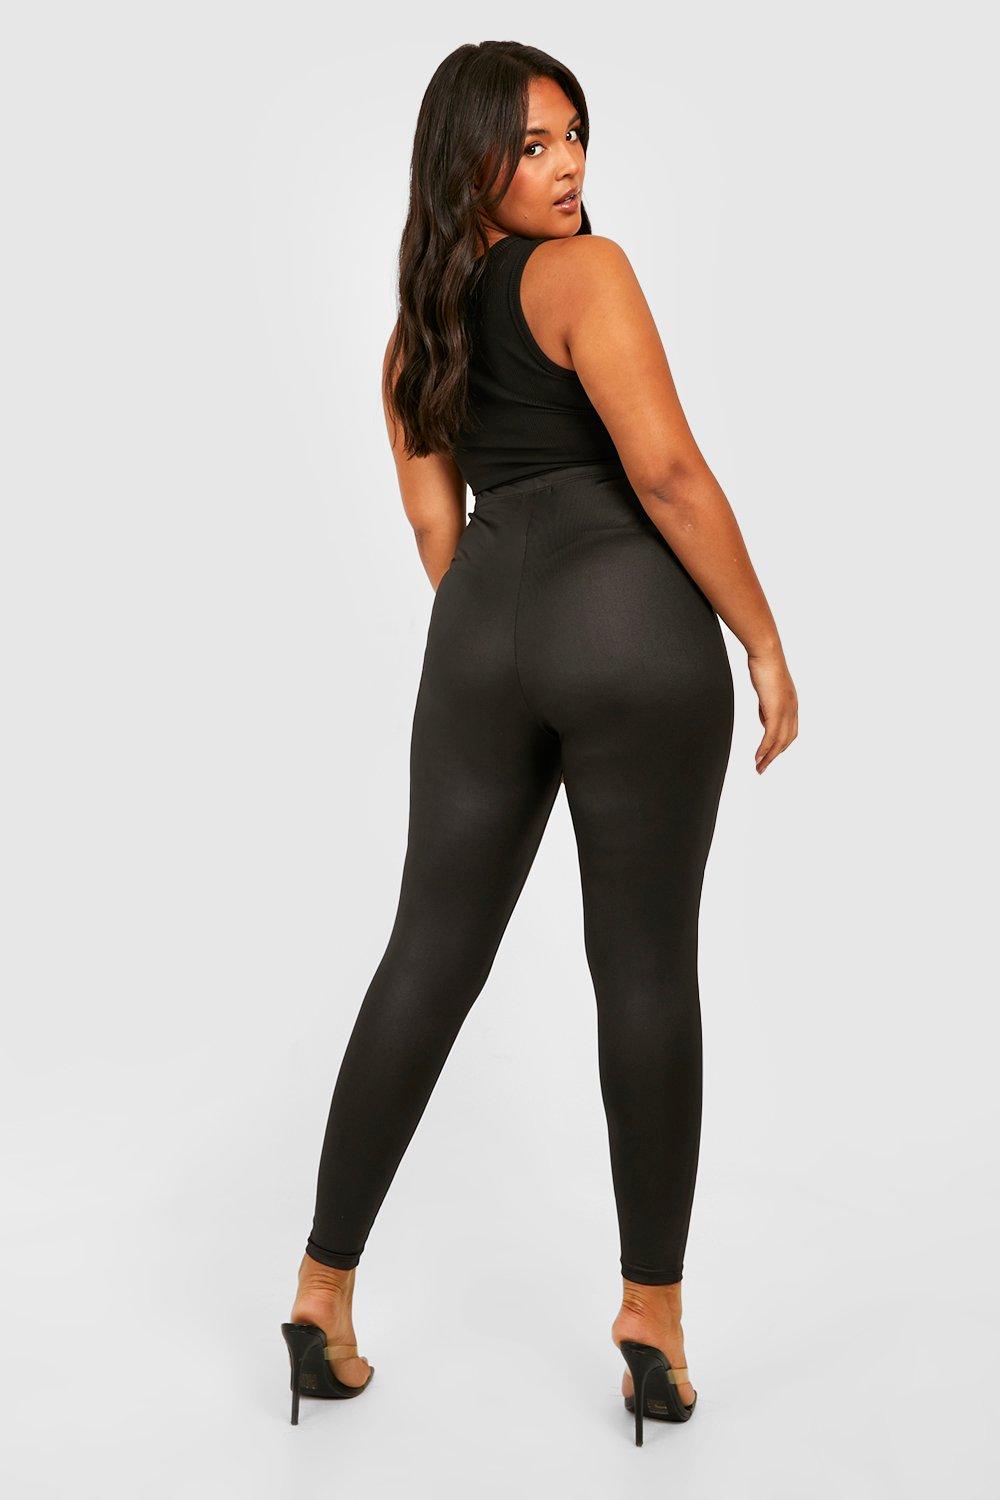 Pantalon legging noir femme grande taille